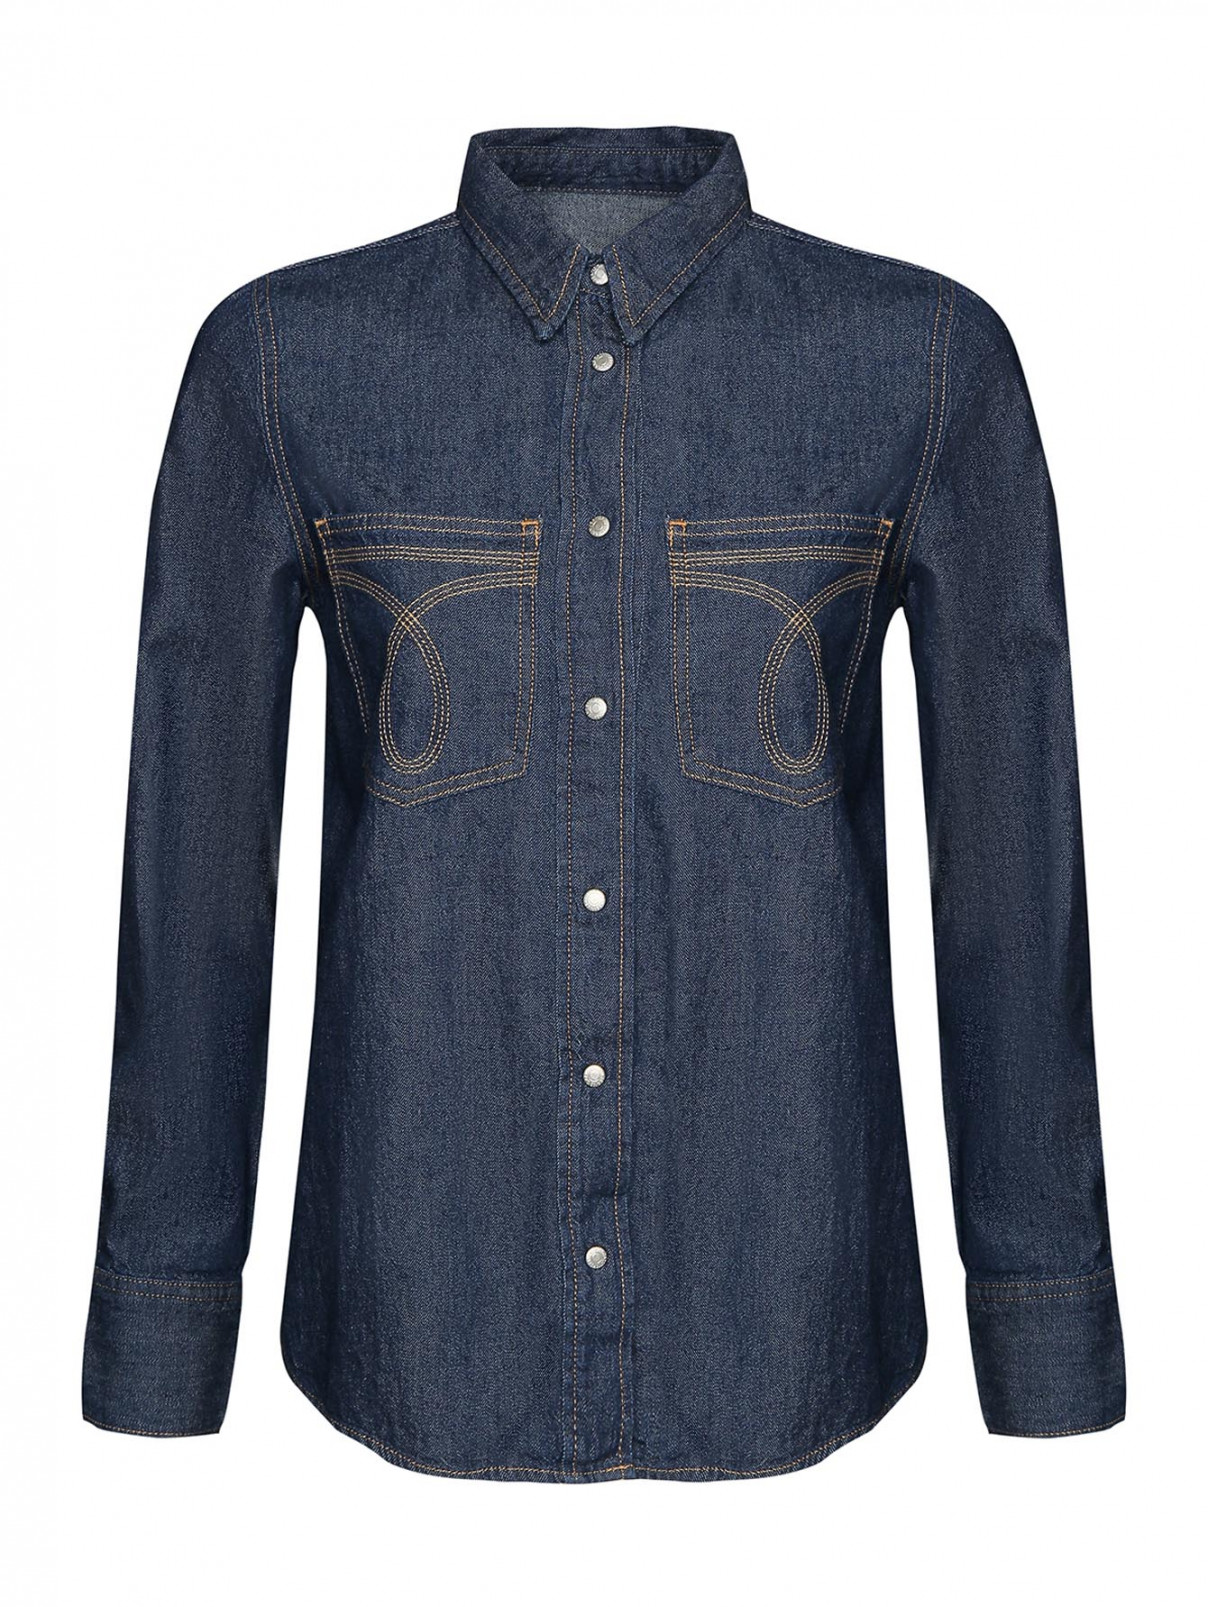 Рубашка джинсовая на кнопках Calvin Klein  –  Общий вид  – Цвет:  Синий